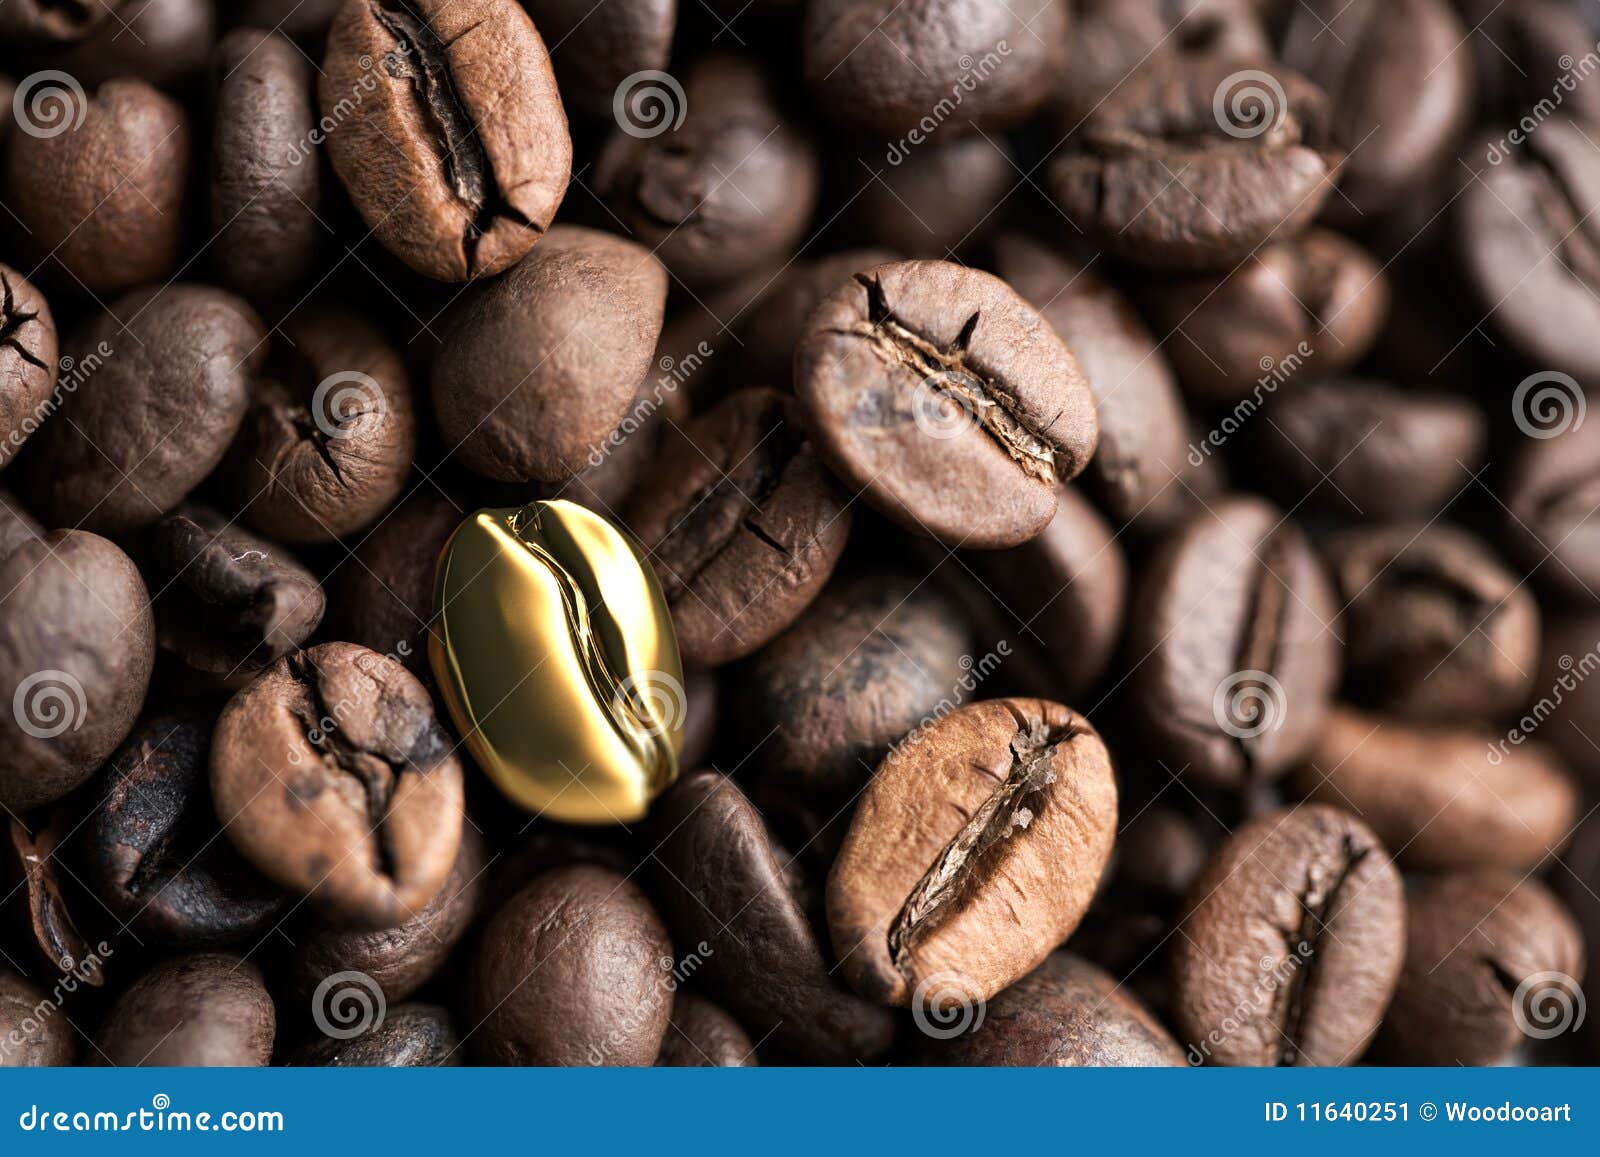 Priorità bassa del chicco di caffè. Chicco di caffè dorato con i chicchi di caffè